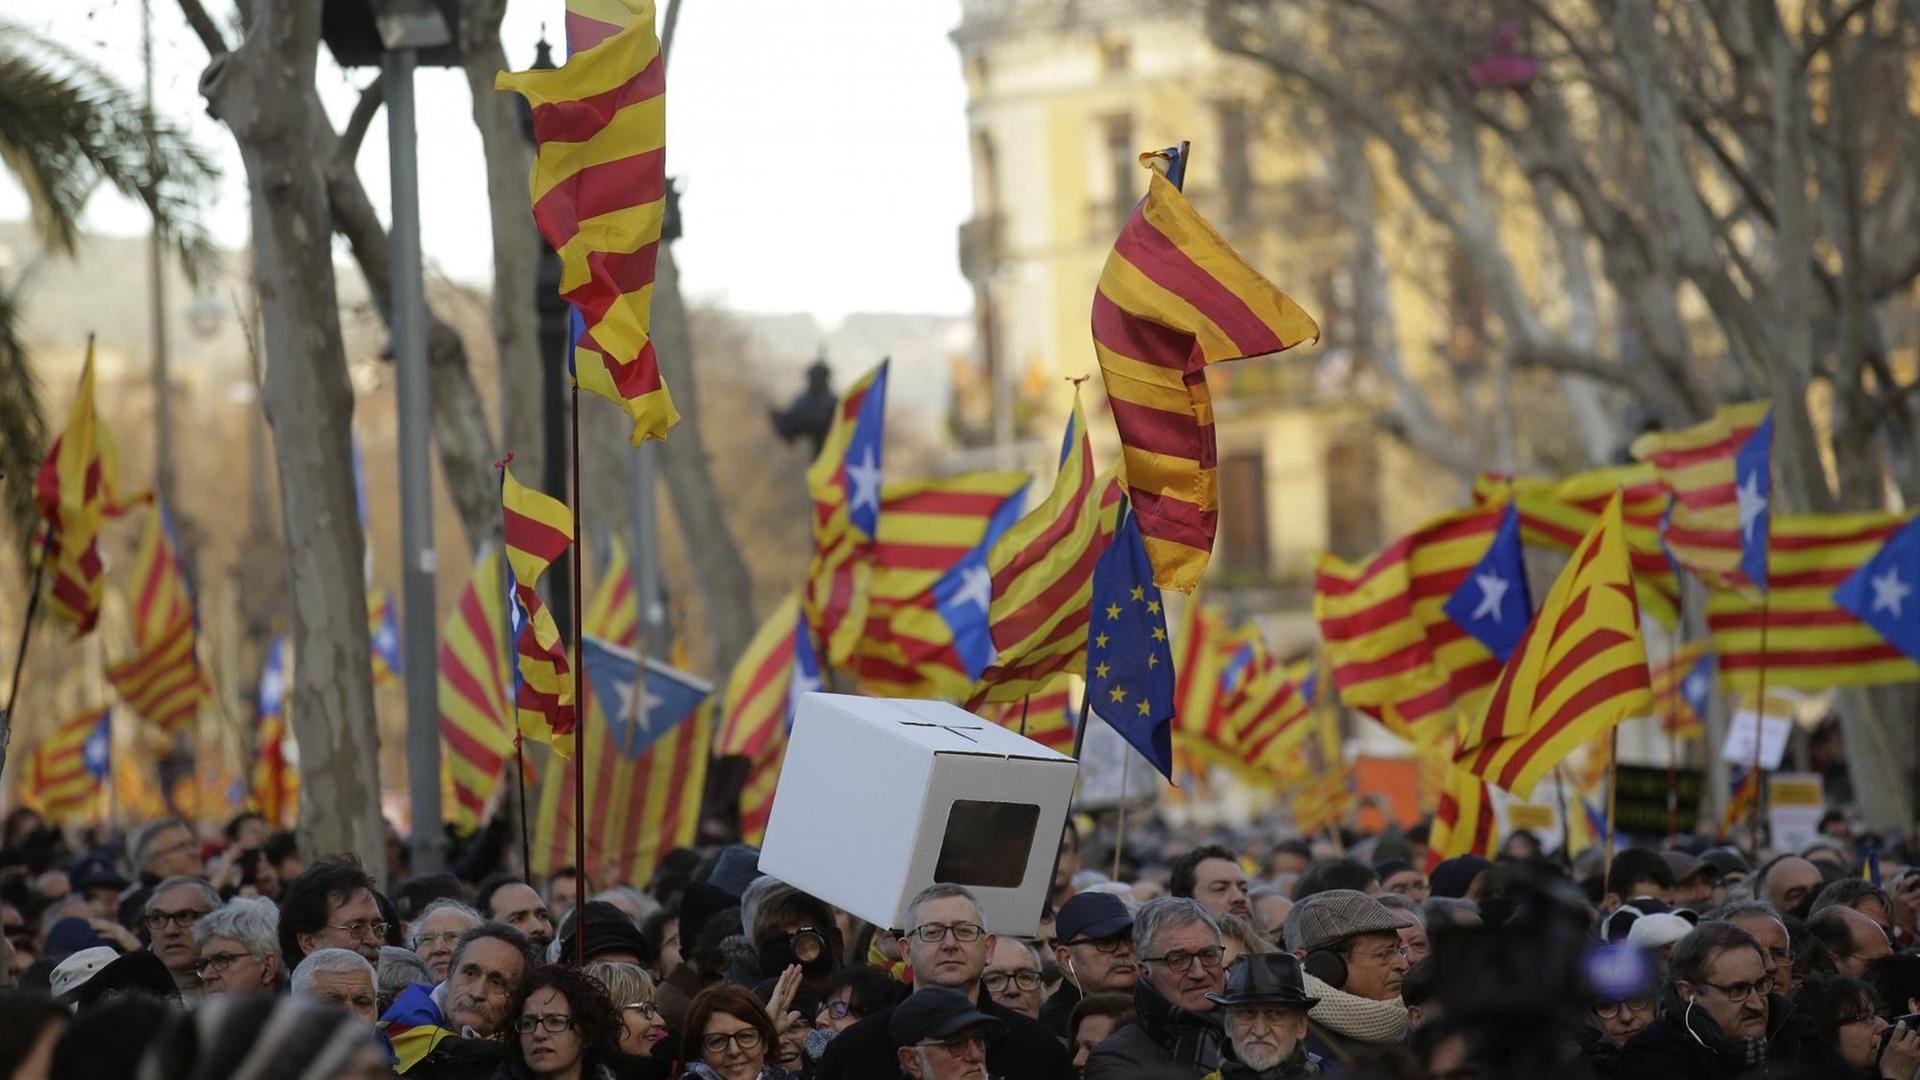 Menschen halten "estelada" oder Pro-Unabhängigkeits-Fahnen hoch, nachdem der frühere Präsident der katalanischen Regionalregierung am 6. Februar 2017 bei Gericht in Barcelona/Spanien eintrifft. Tausende gehen aus Protest gegen das Verfahren gegen drei katalanische Politiker auf die Straße.